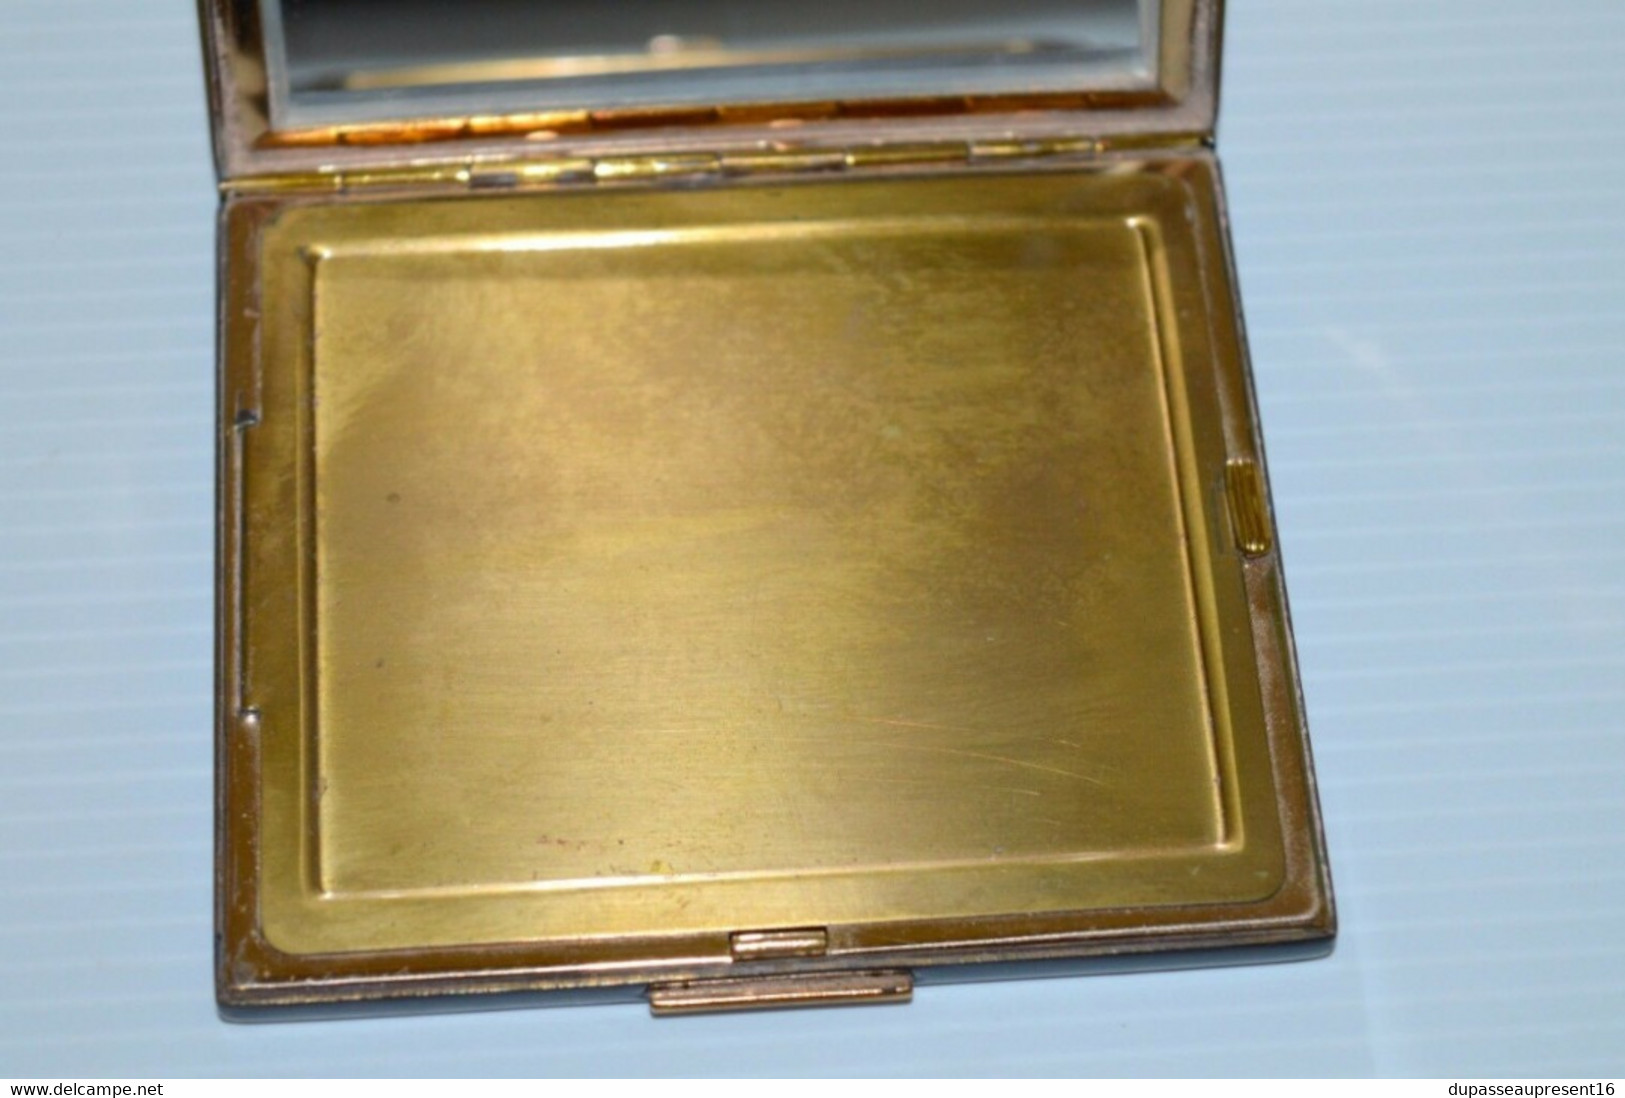 POUDRIER ANCIEN LAQUE de CHINE CORONA NOIRE et métal doré poudre usée collection déco vitrine boite à poudre